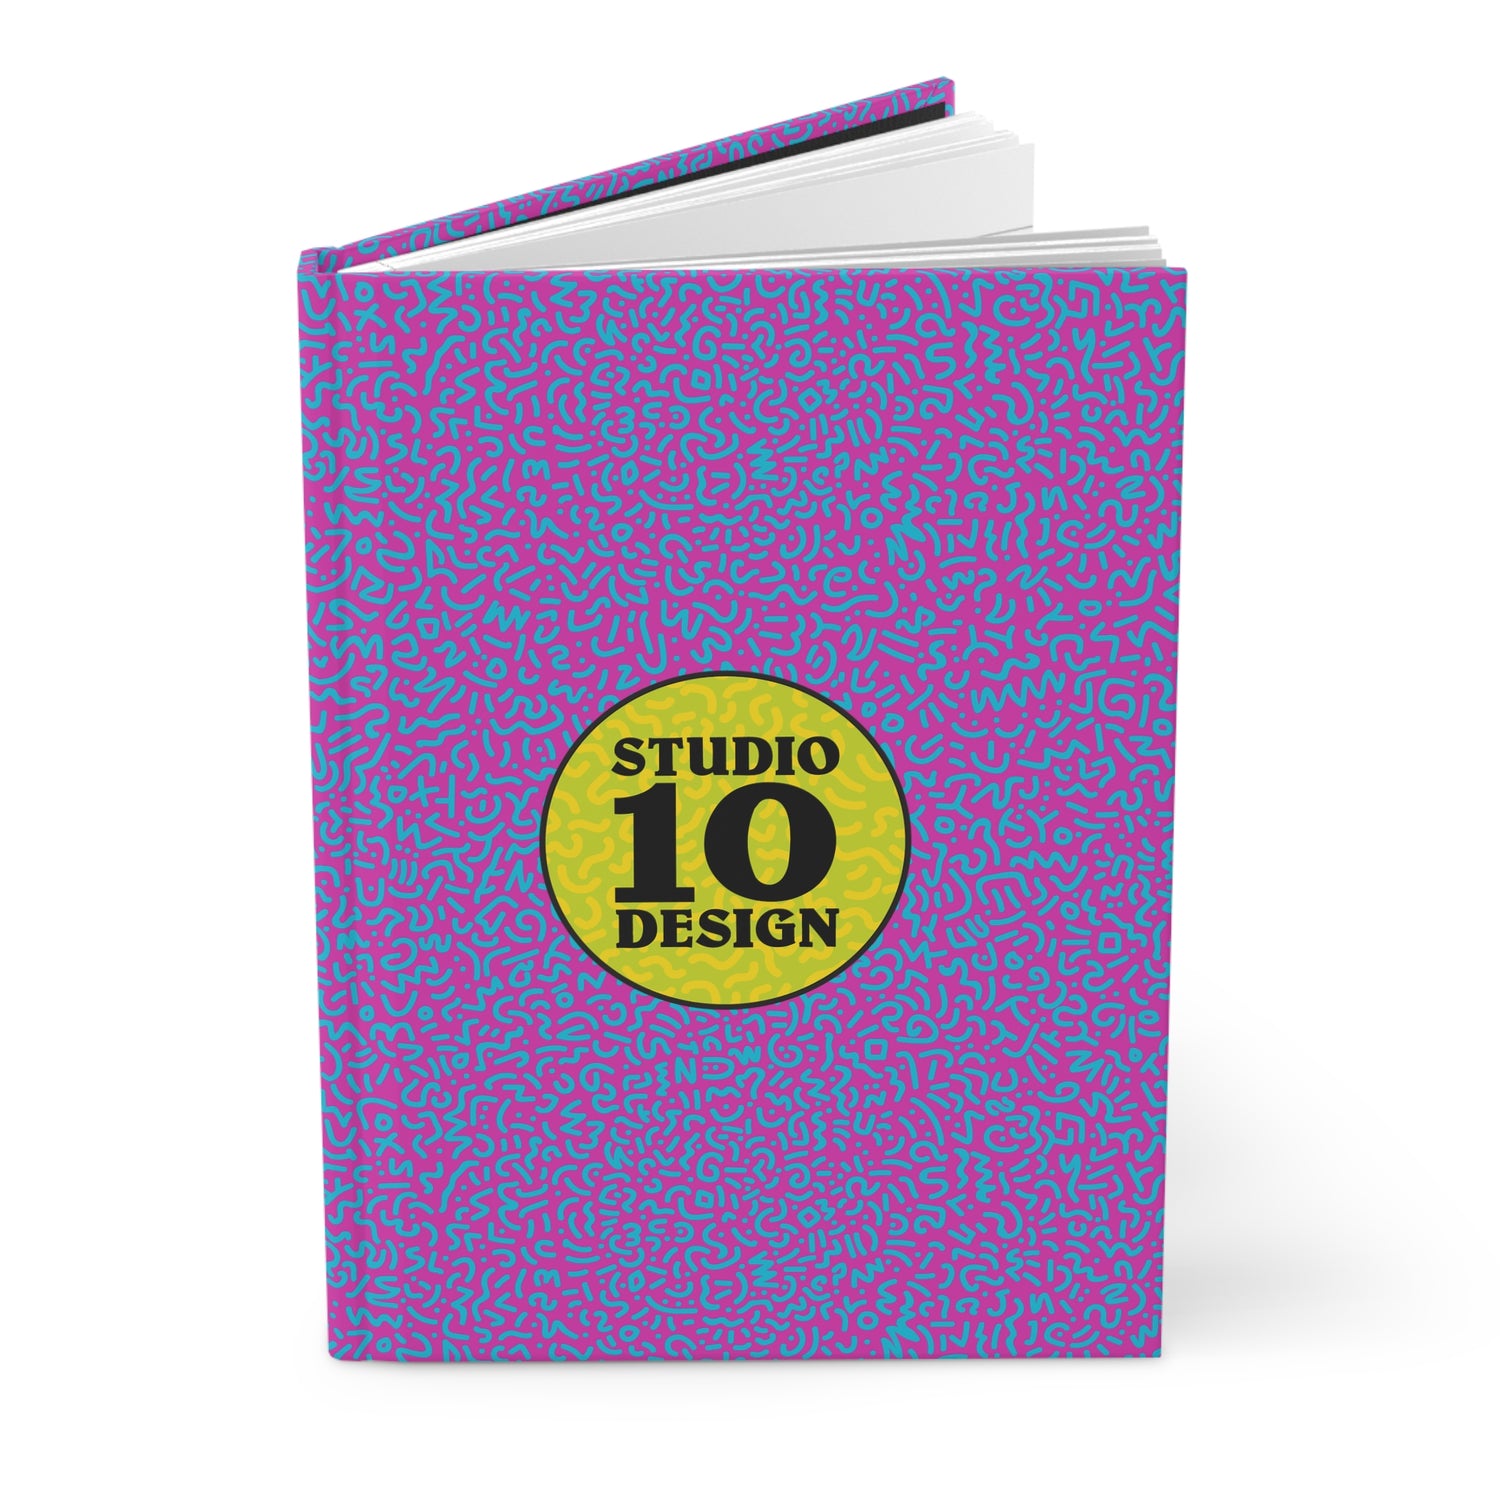 Hardcover Journals by Studio Ten Design